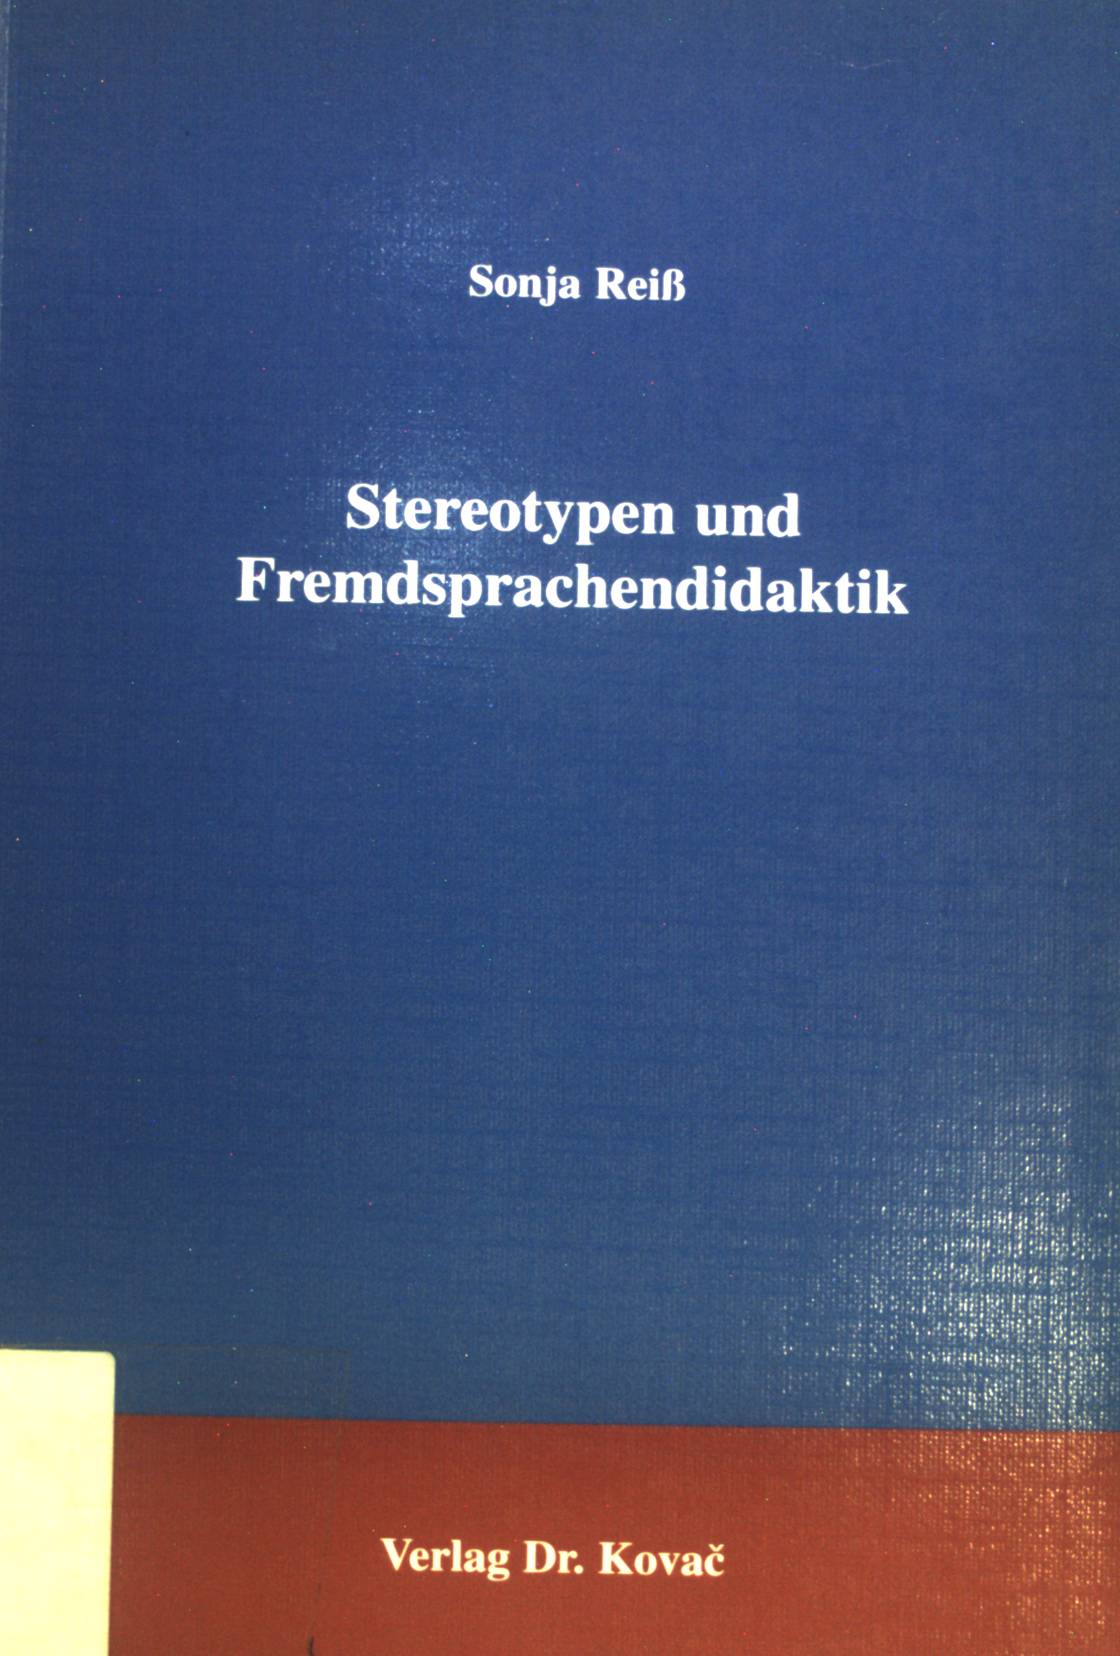 Stereotypen und Fremdsprachendidaktik. Schriftenreihe Philologia ; Bd. 22 - Reiß, Sonja